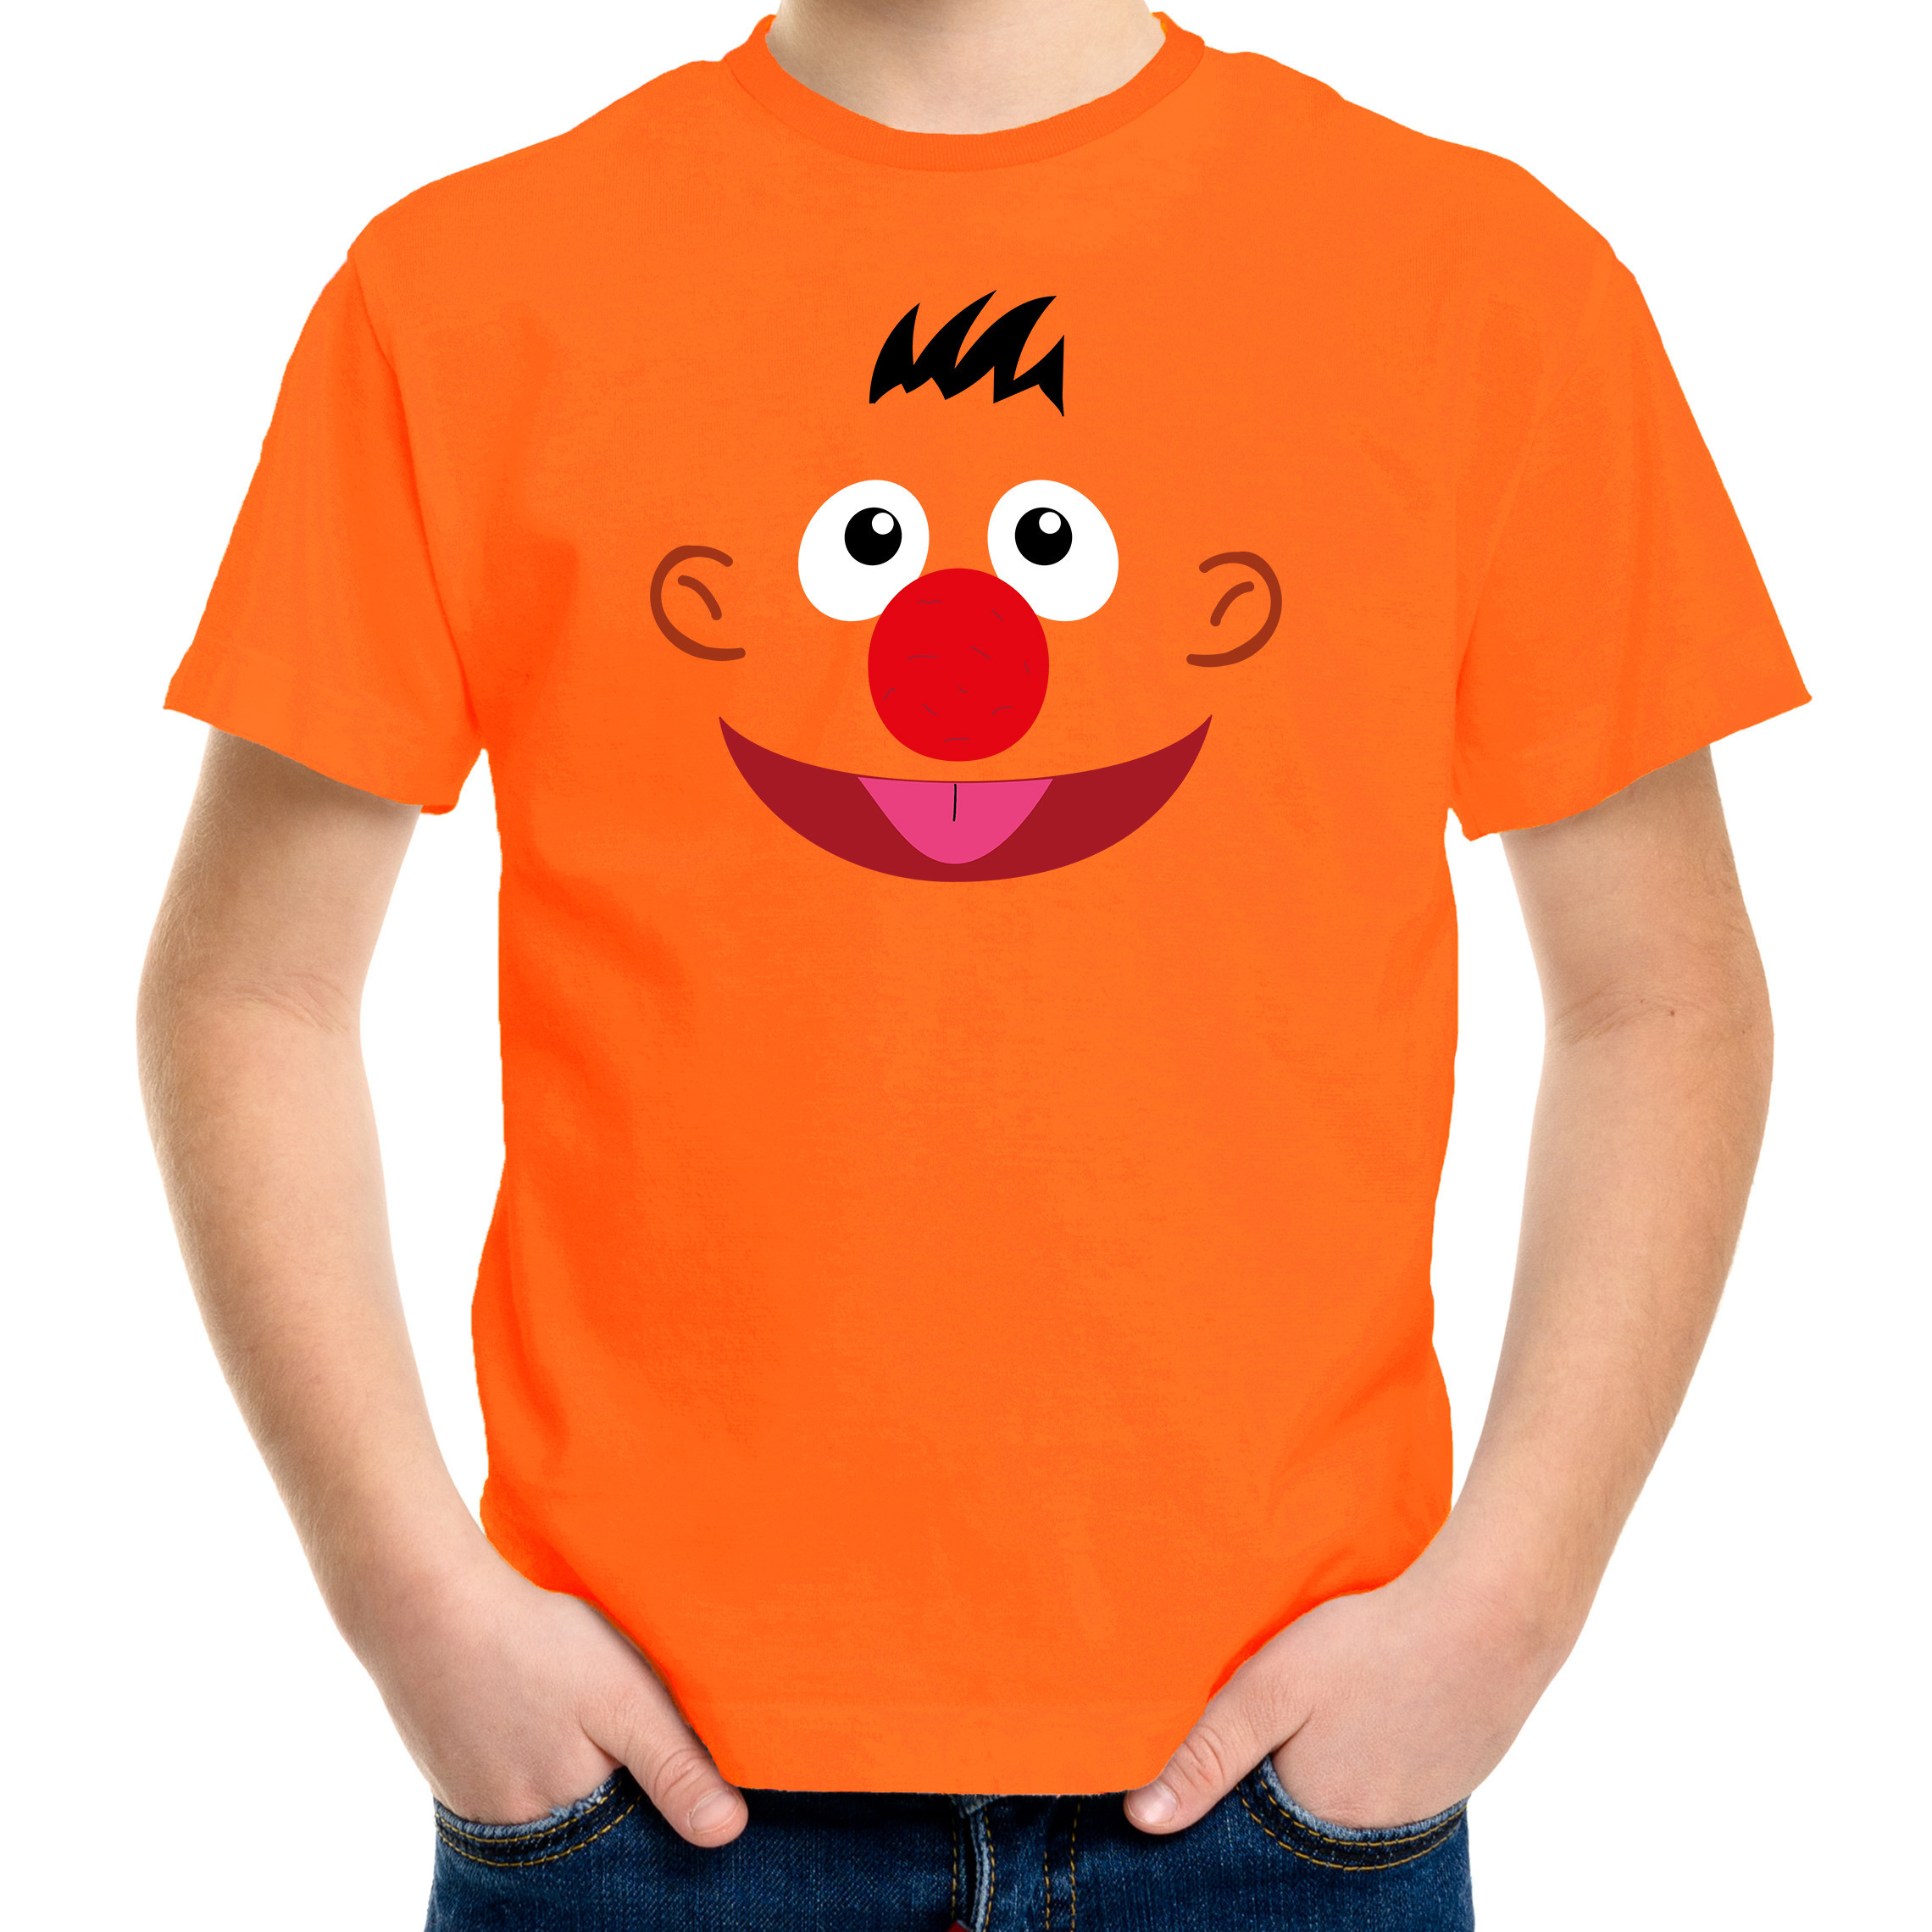 Verkleed-carnaval t-shirt oranje cartoon knuffel pop voor kinderen Verkleed-kostuum shirts